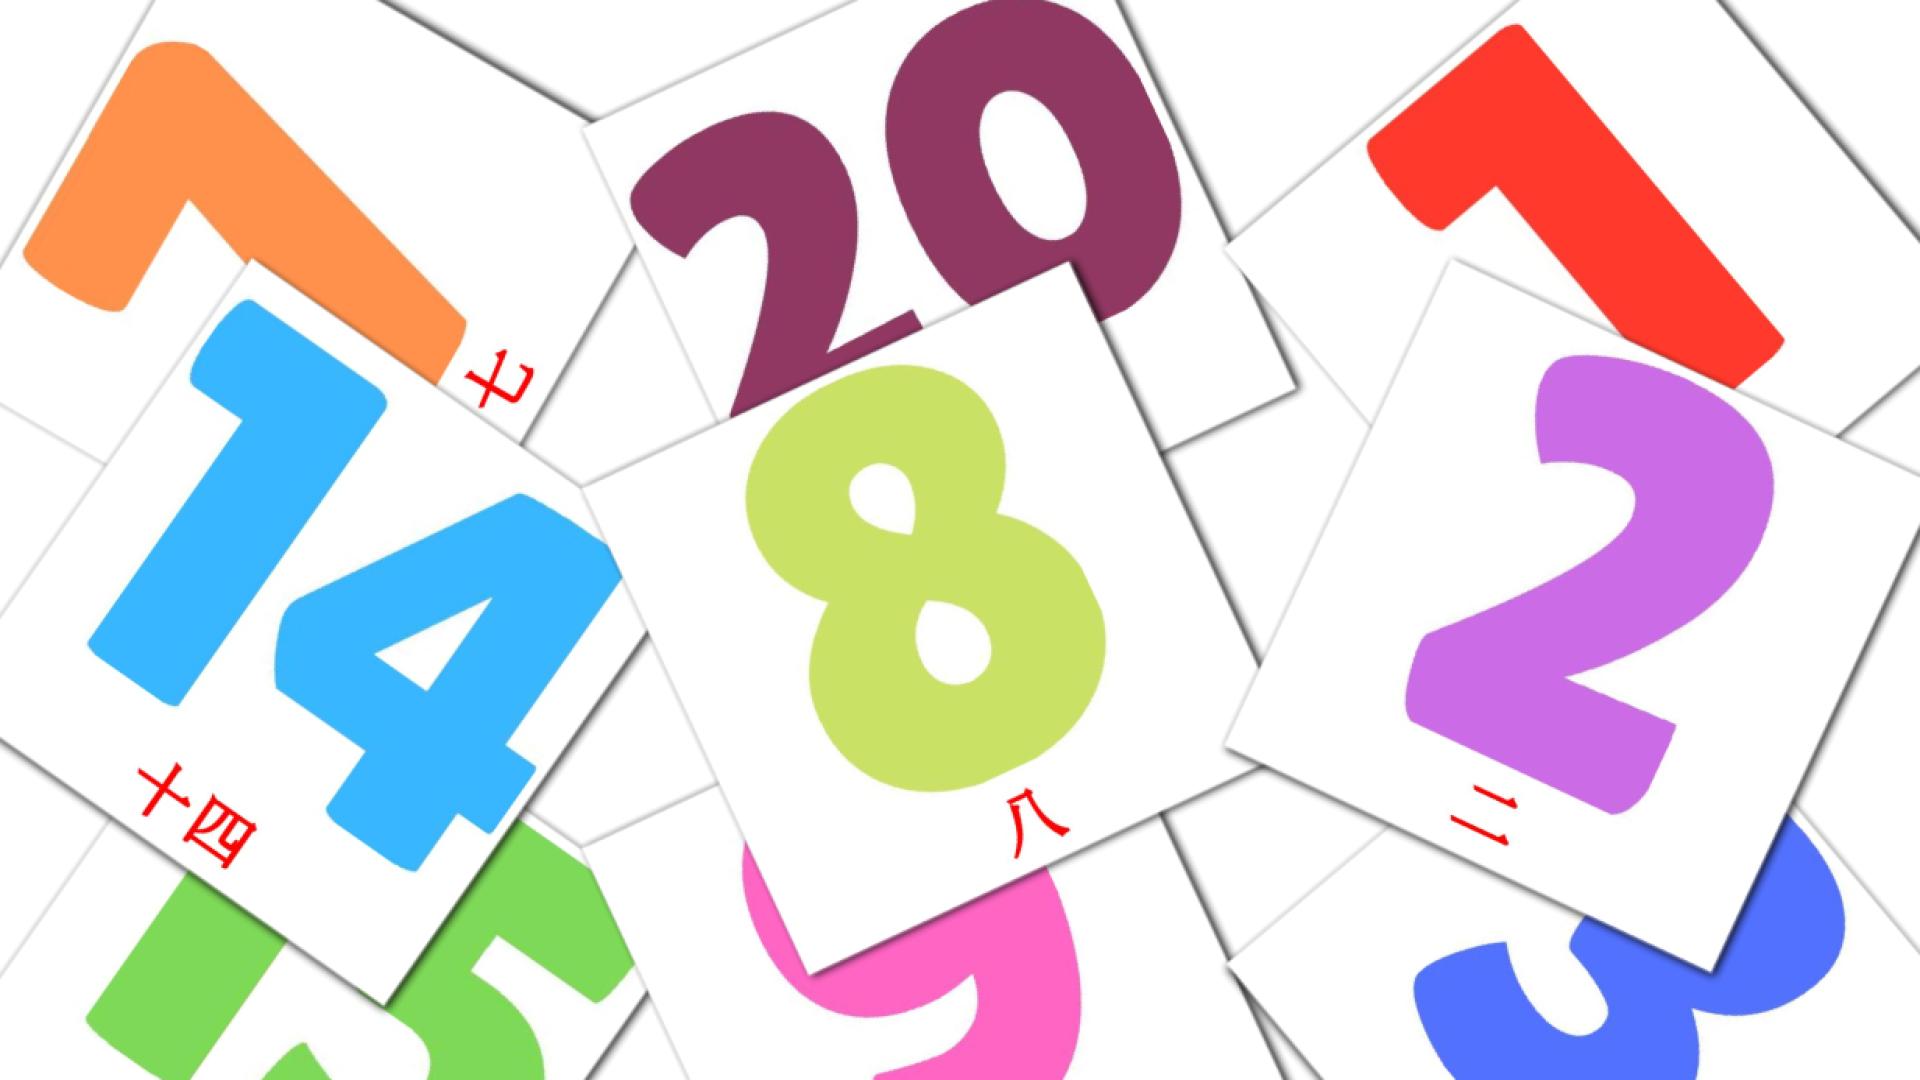 tarjetas didacticas de 数字 (1-20)